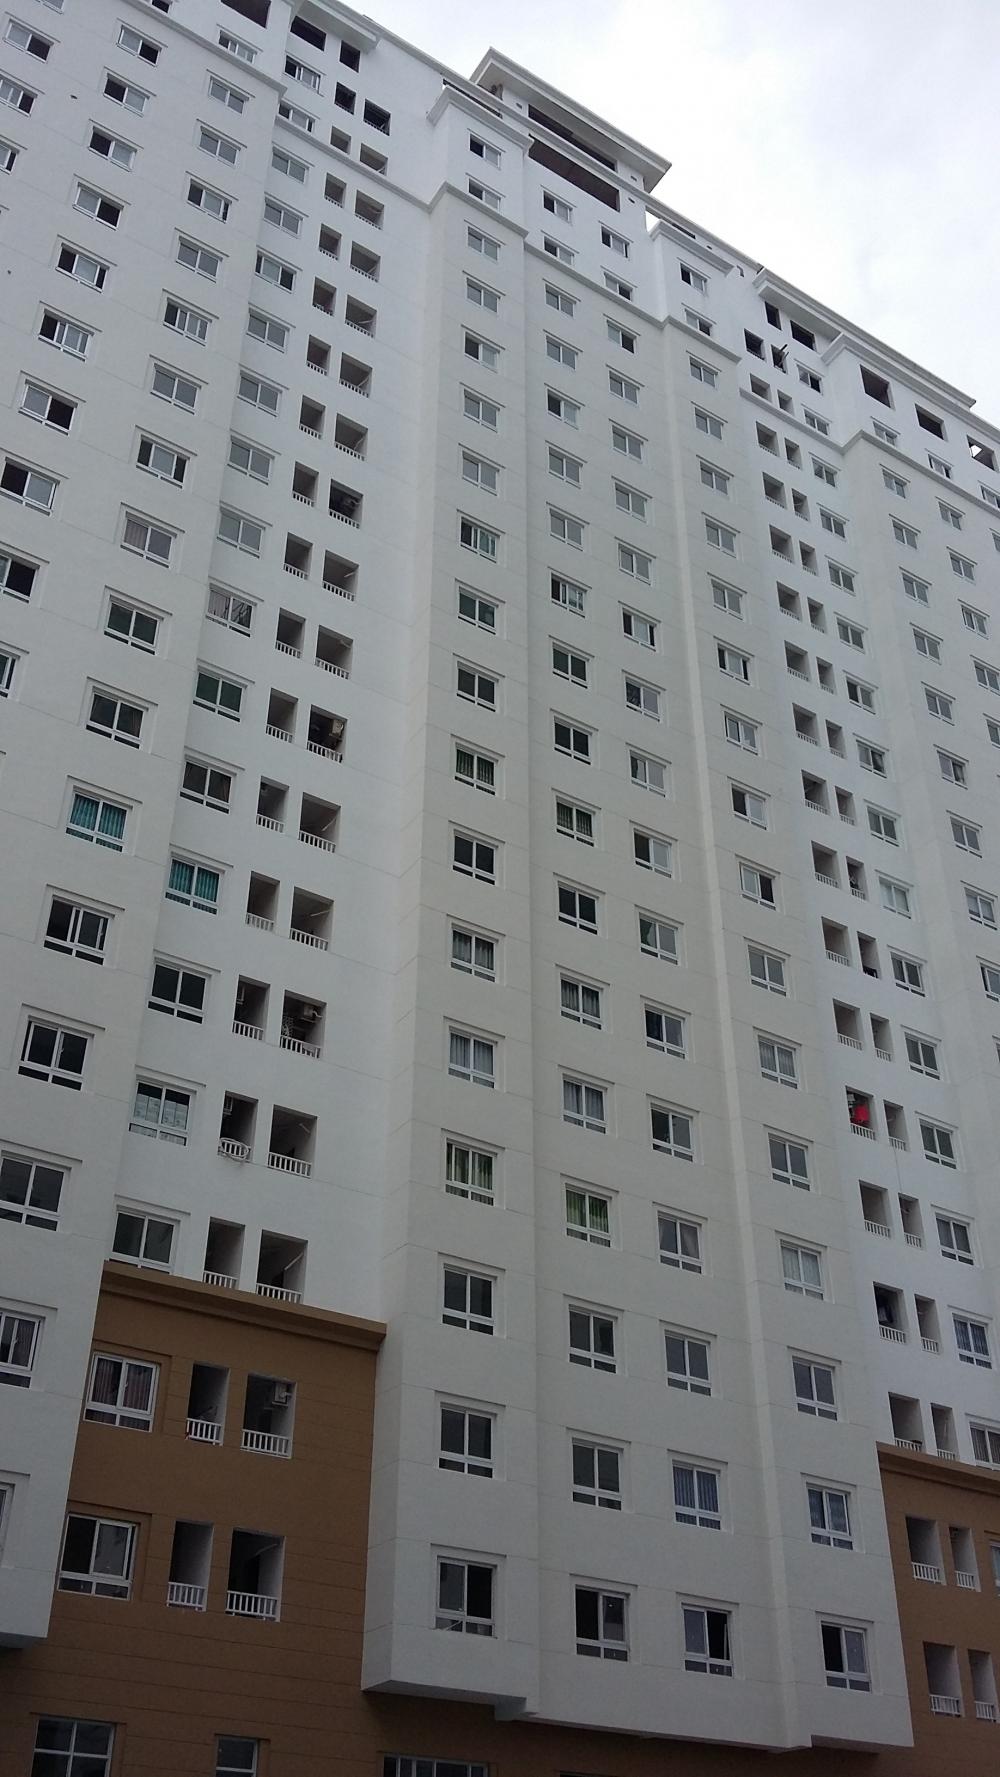 Cho thuê căn hộ chung cư Topaz Garden Q.Tân Phú.74m2,2pn,nhà trống,7.5tr/th LH 0932 204 185